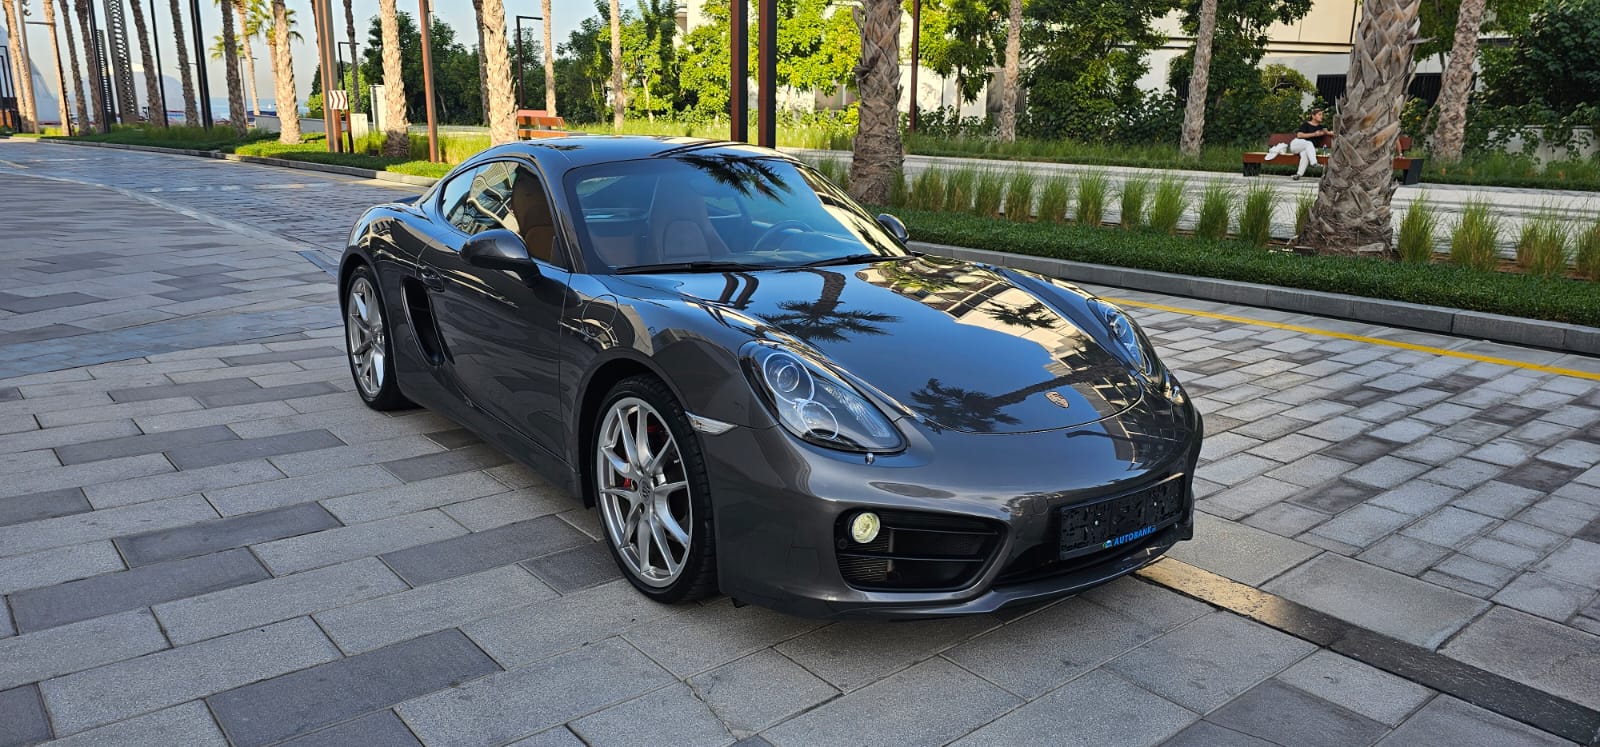 Porsche Cayman S 2014 